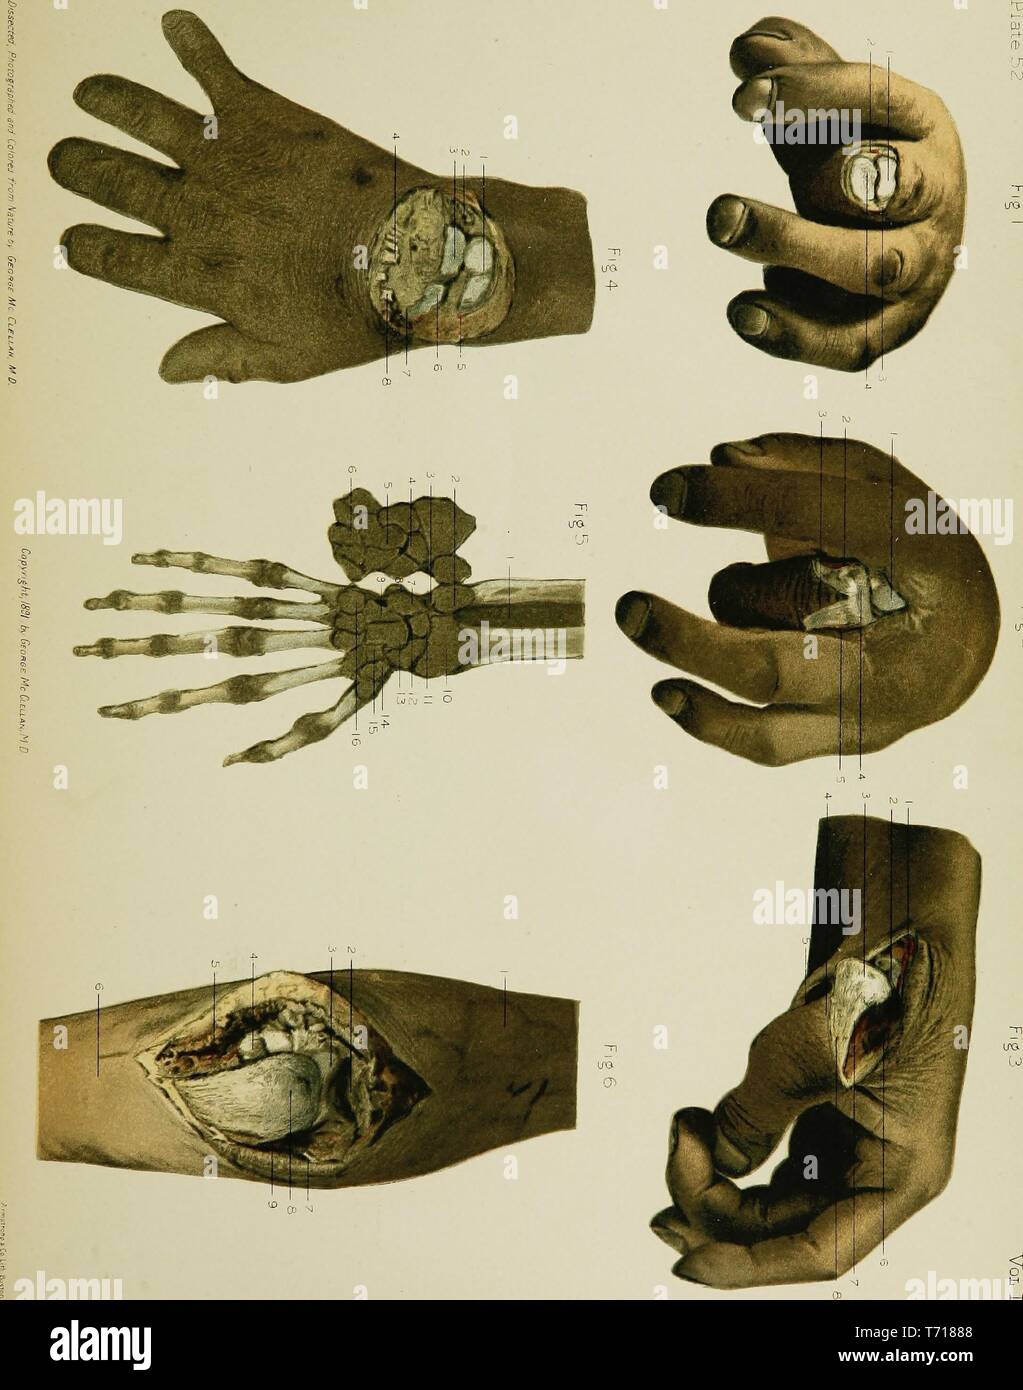 Illustrazioni di Anatomia delle ossa metacarpali, dal libro "anatomia regionale nella sua relazione alla medicina e chirurgia' da George McClellan, 1891. La cortesia Internet Archive. () Foto Stock